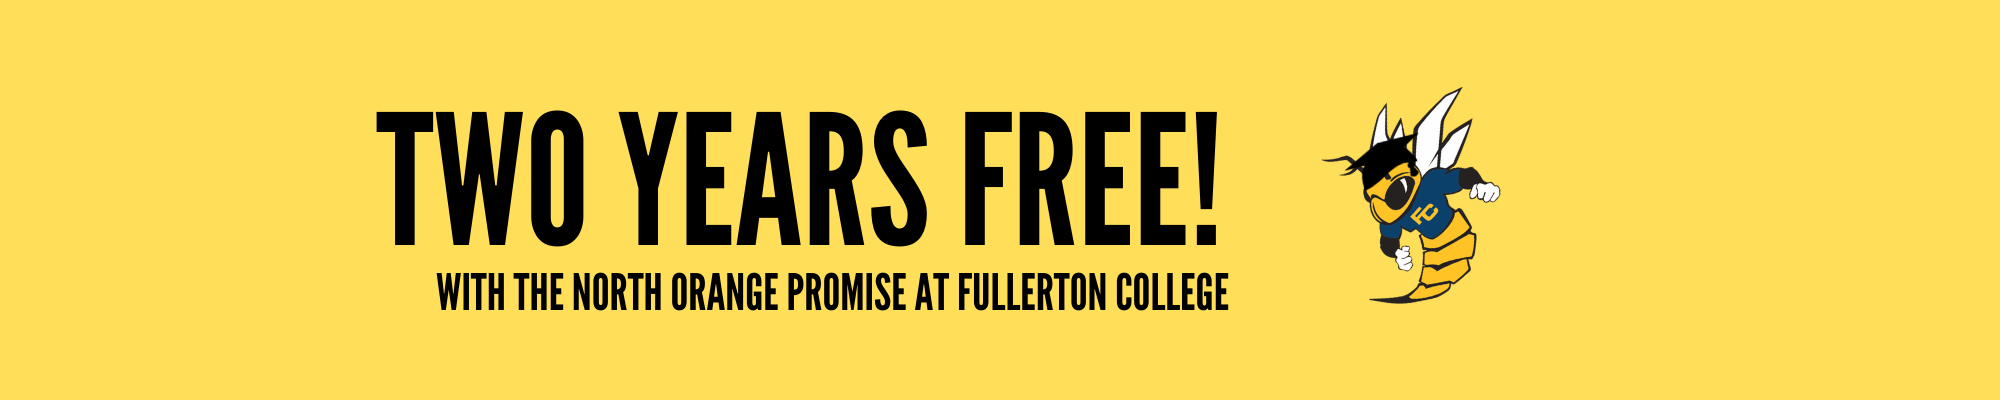 North Orange Promise | Fullerton College